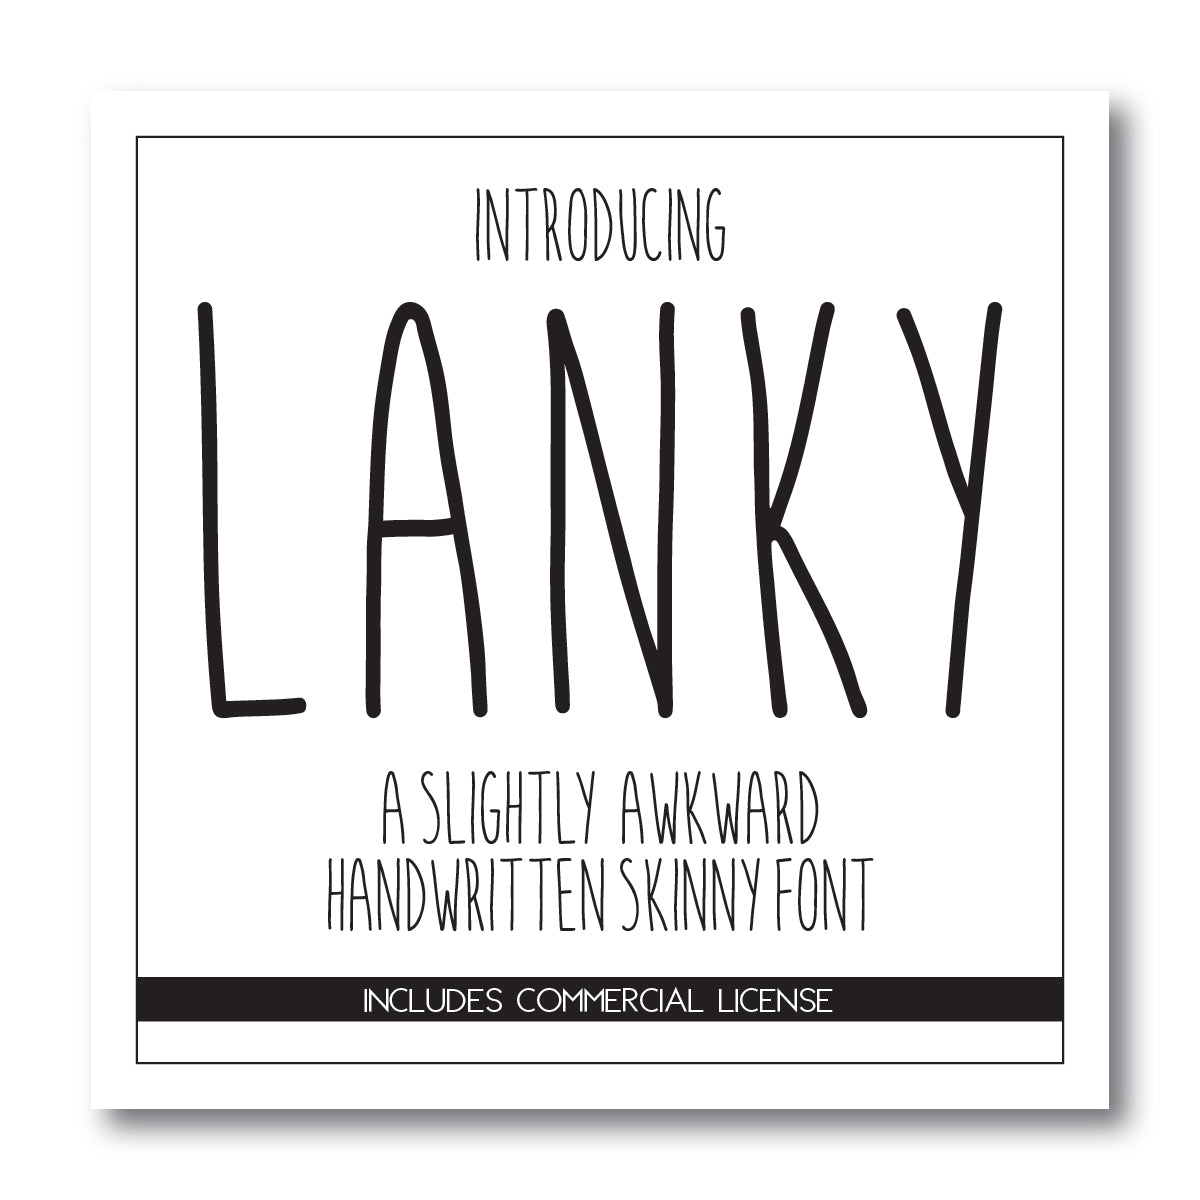 Lanky Font